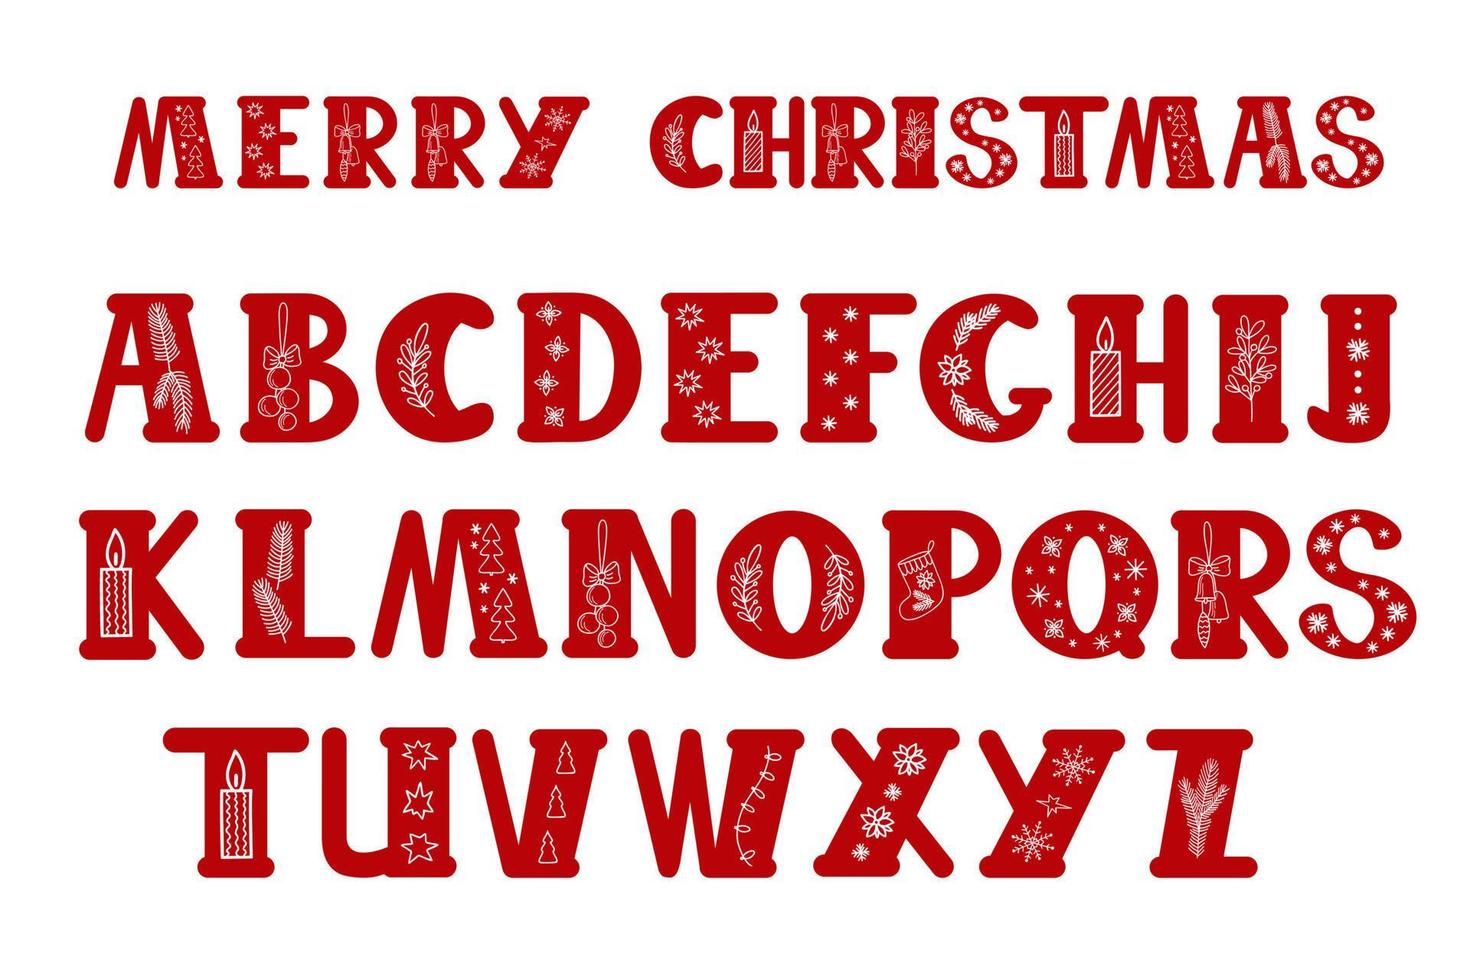 Letras dibujadas a mano decoradas en rojo capital del alfabeto inglés ilustración de vector de estilo de fideos de Navidad, abc caligráfico, escritura graciosa, dibujos animados y letras